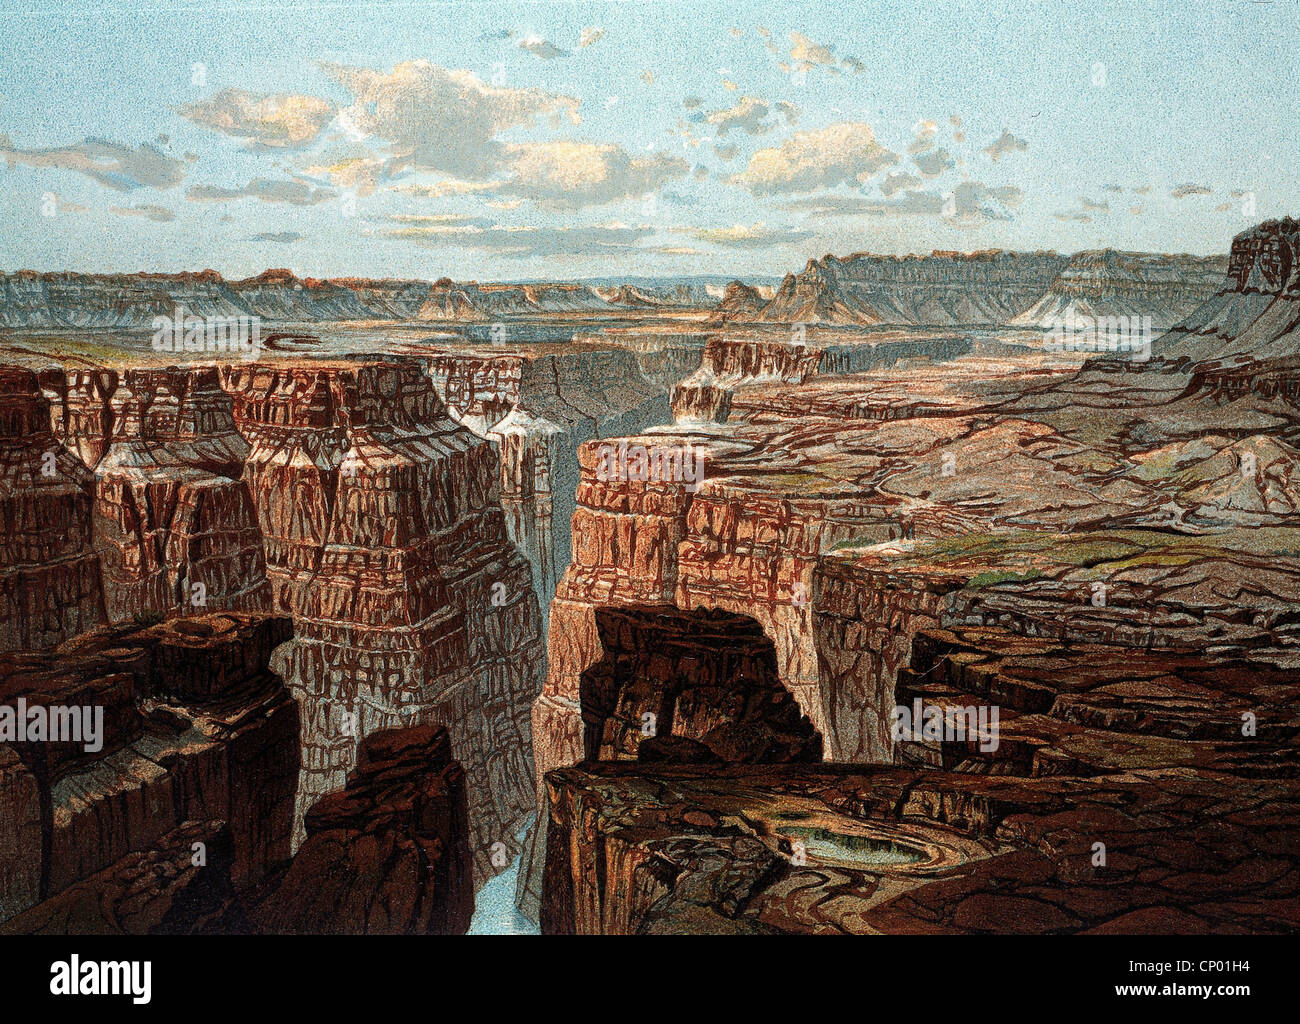 Geografía / viajes, Estados Unidos de América, Arizona, Gran Cañón, paisaje con Colorado, cromolitógrafo, alrededor de 1887, Derechos adicionales-Clearences-no disponible Foto de stock